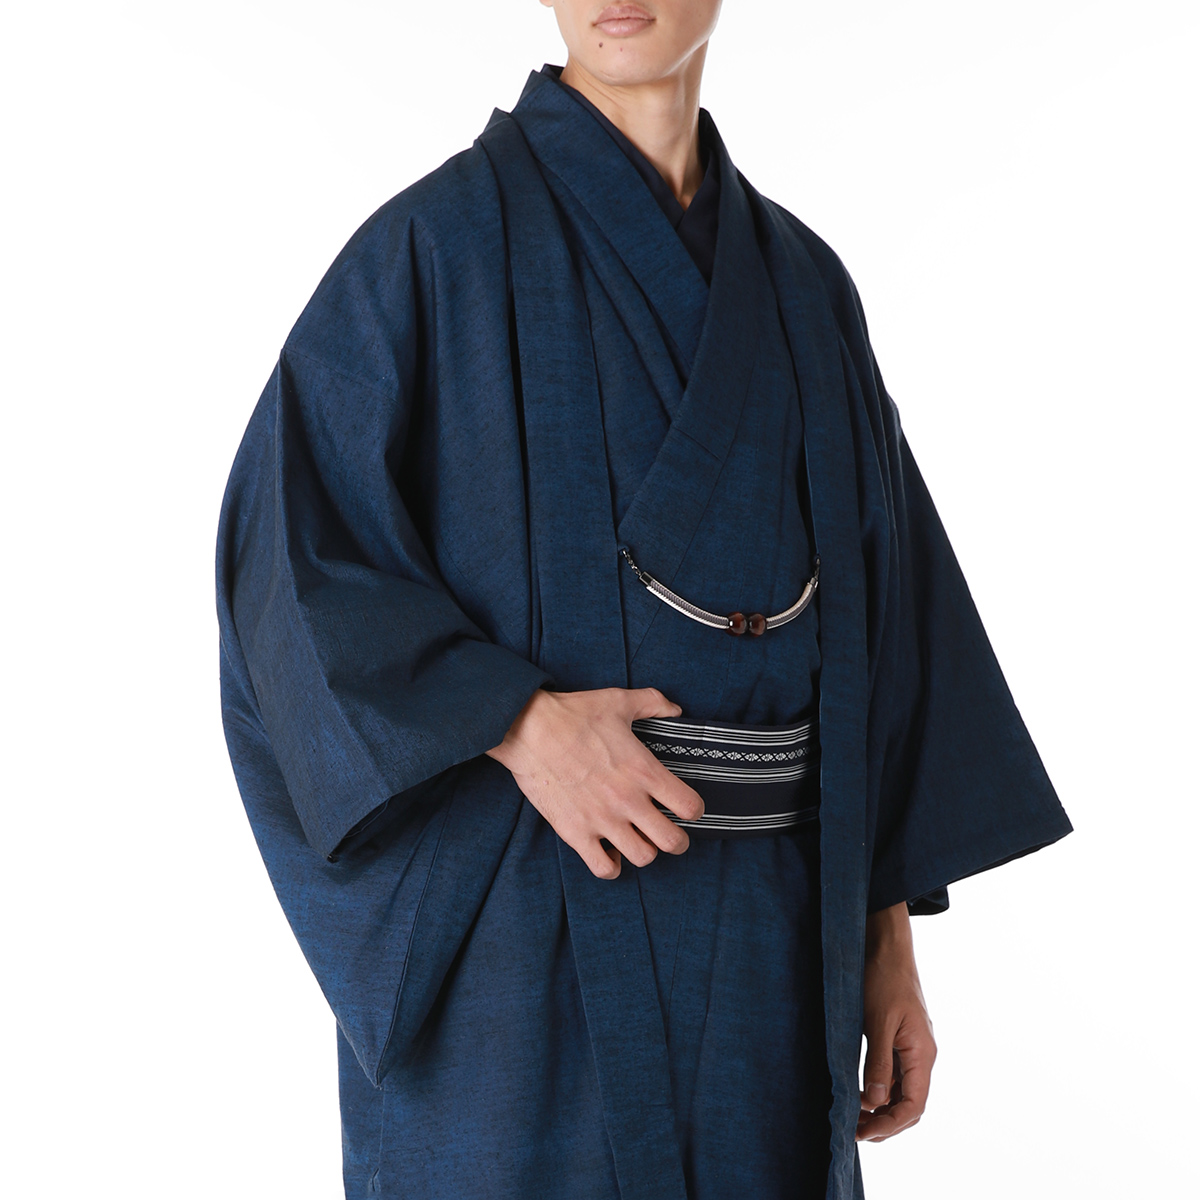 正絹着物 西陣織物 アンサンブル 男性着物と羽織の2点セット 紬 袷 | 男着物の加藤商店